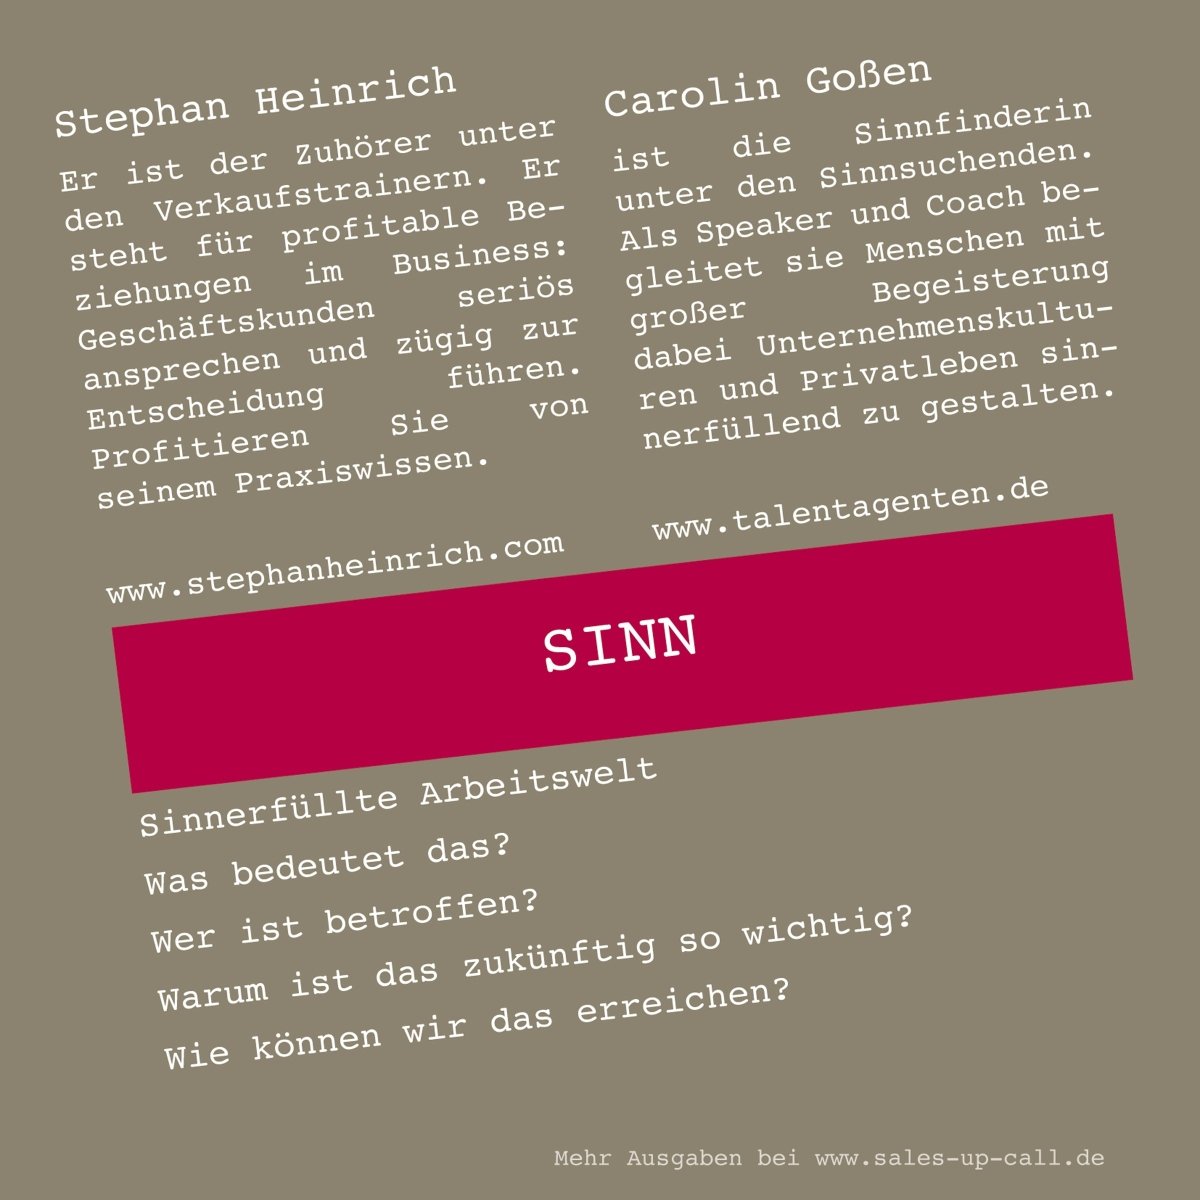 Sinn - Sales-up-Call - Stephan Heinrich